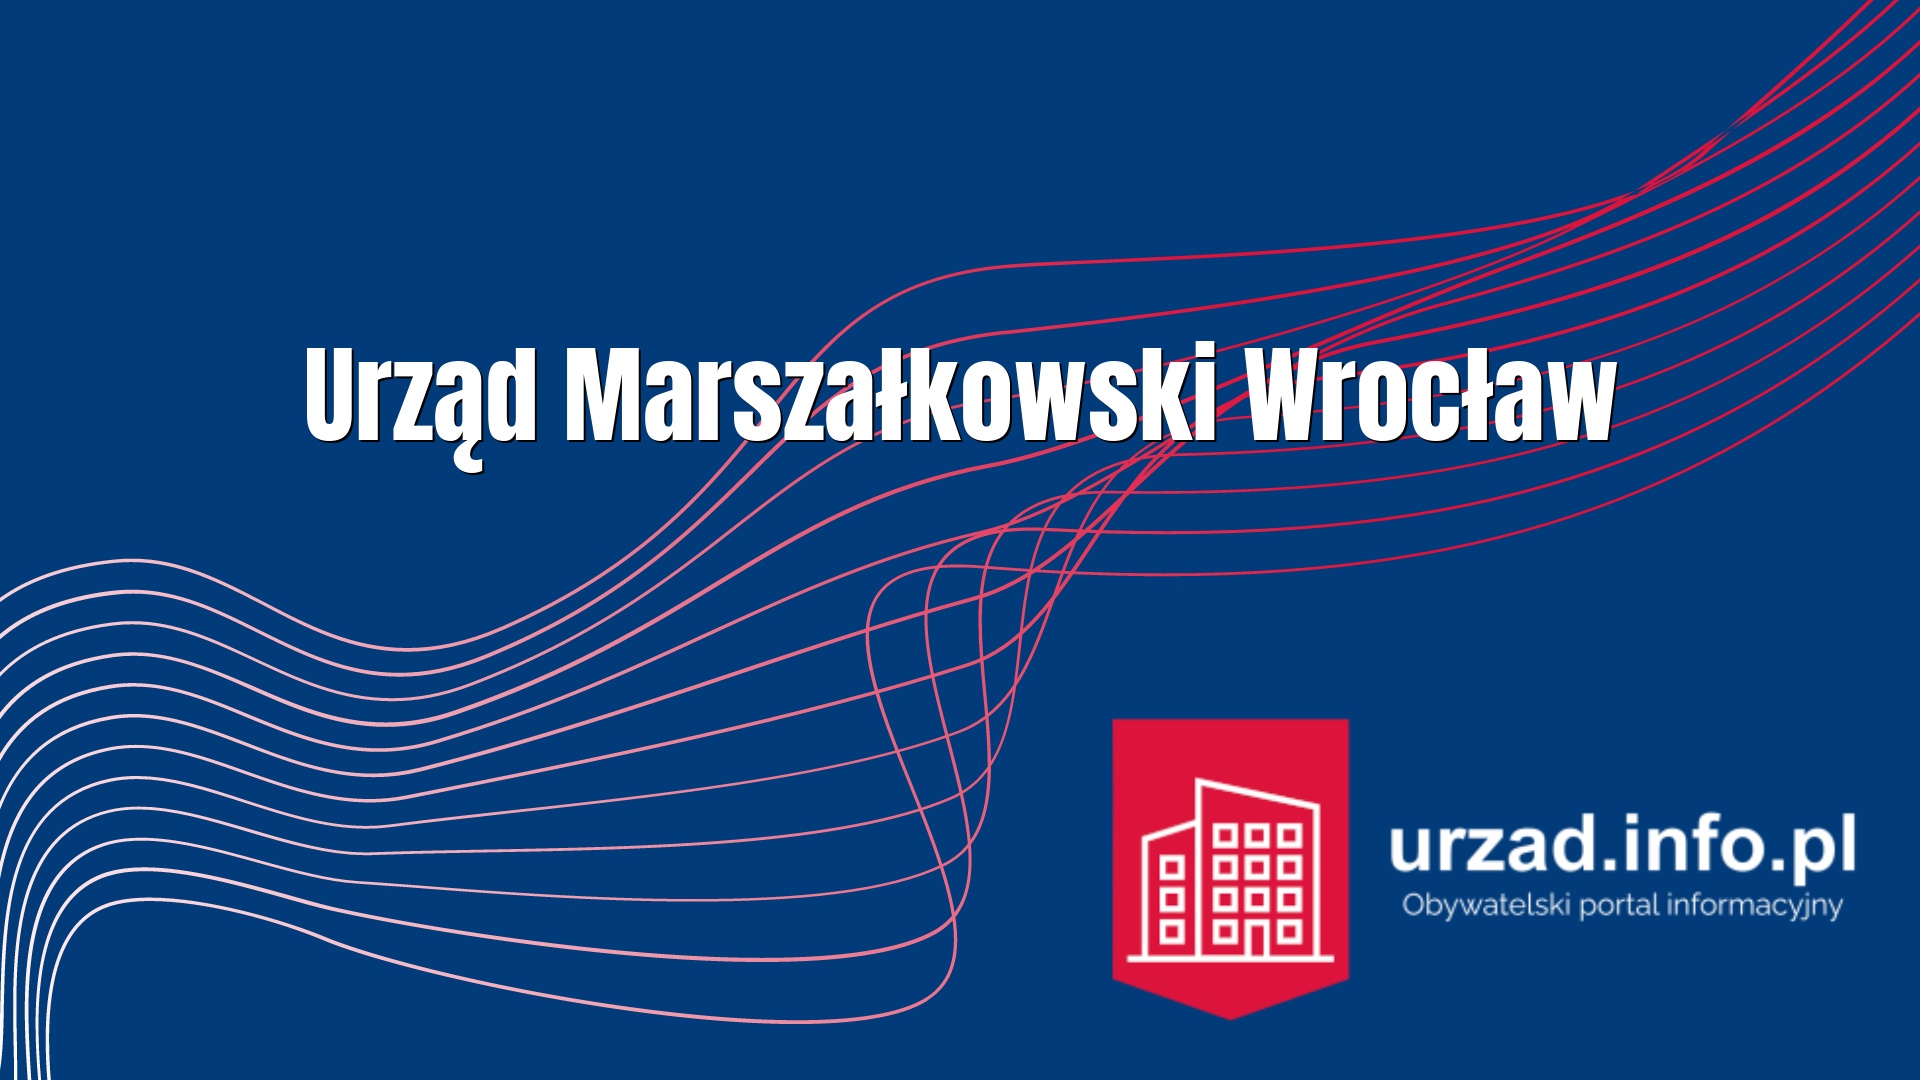 Urząd Marszałkowski Wrocław